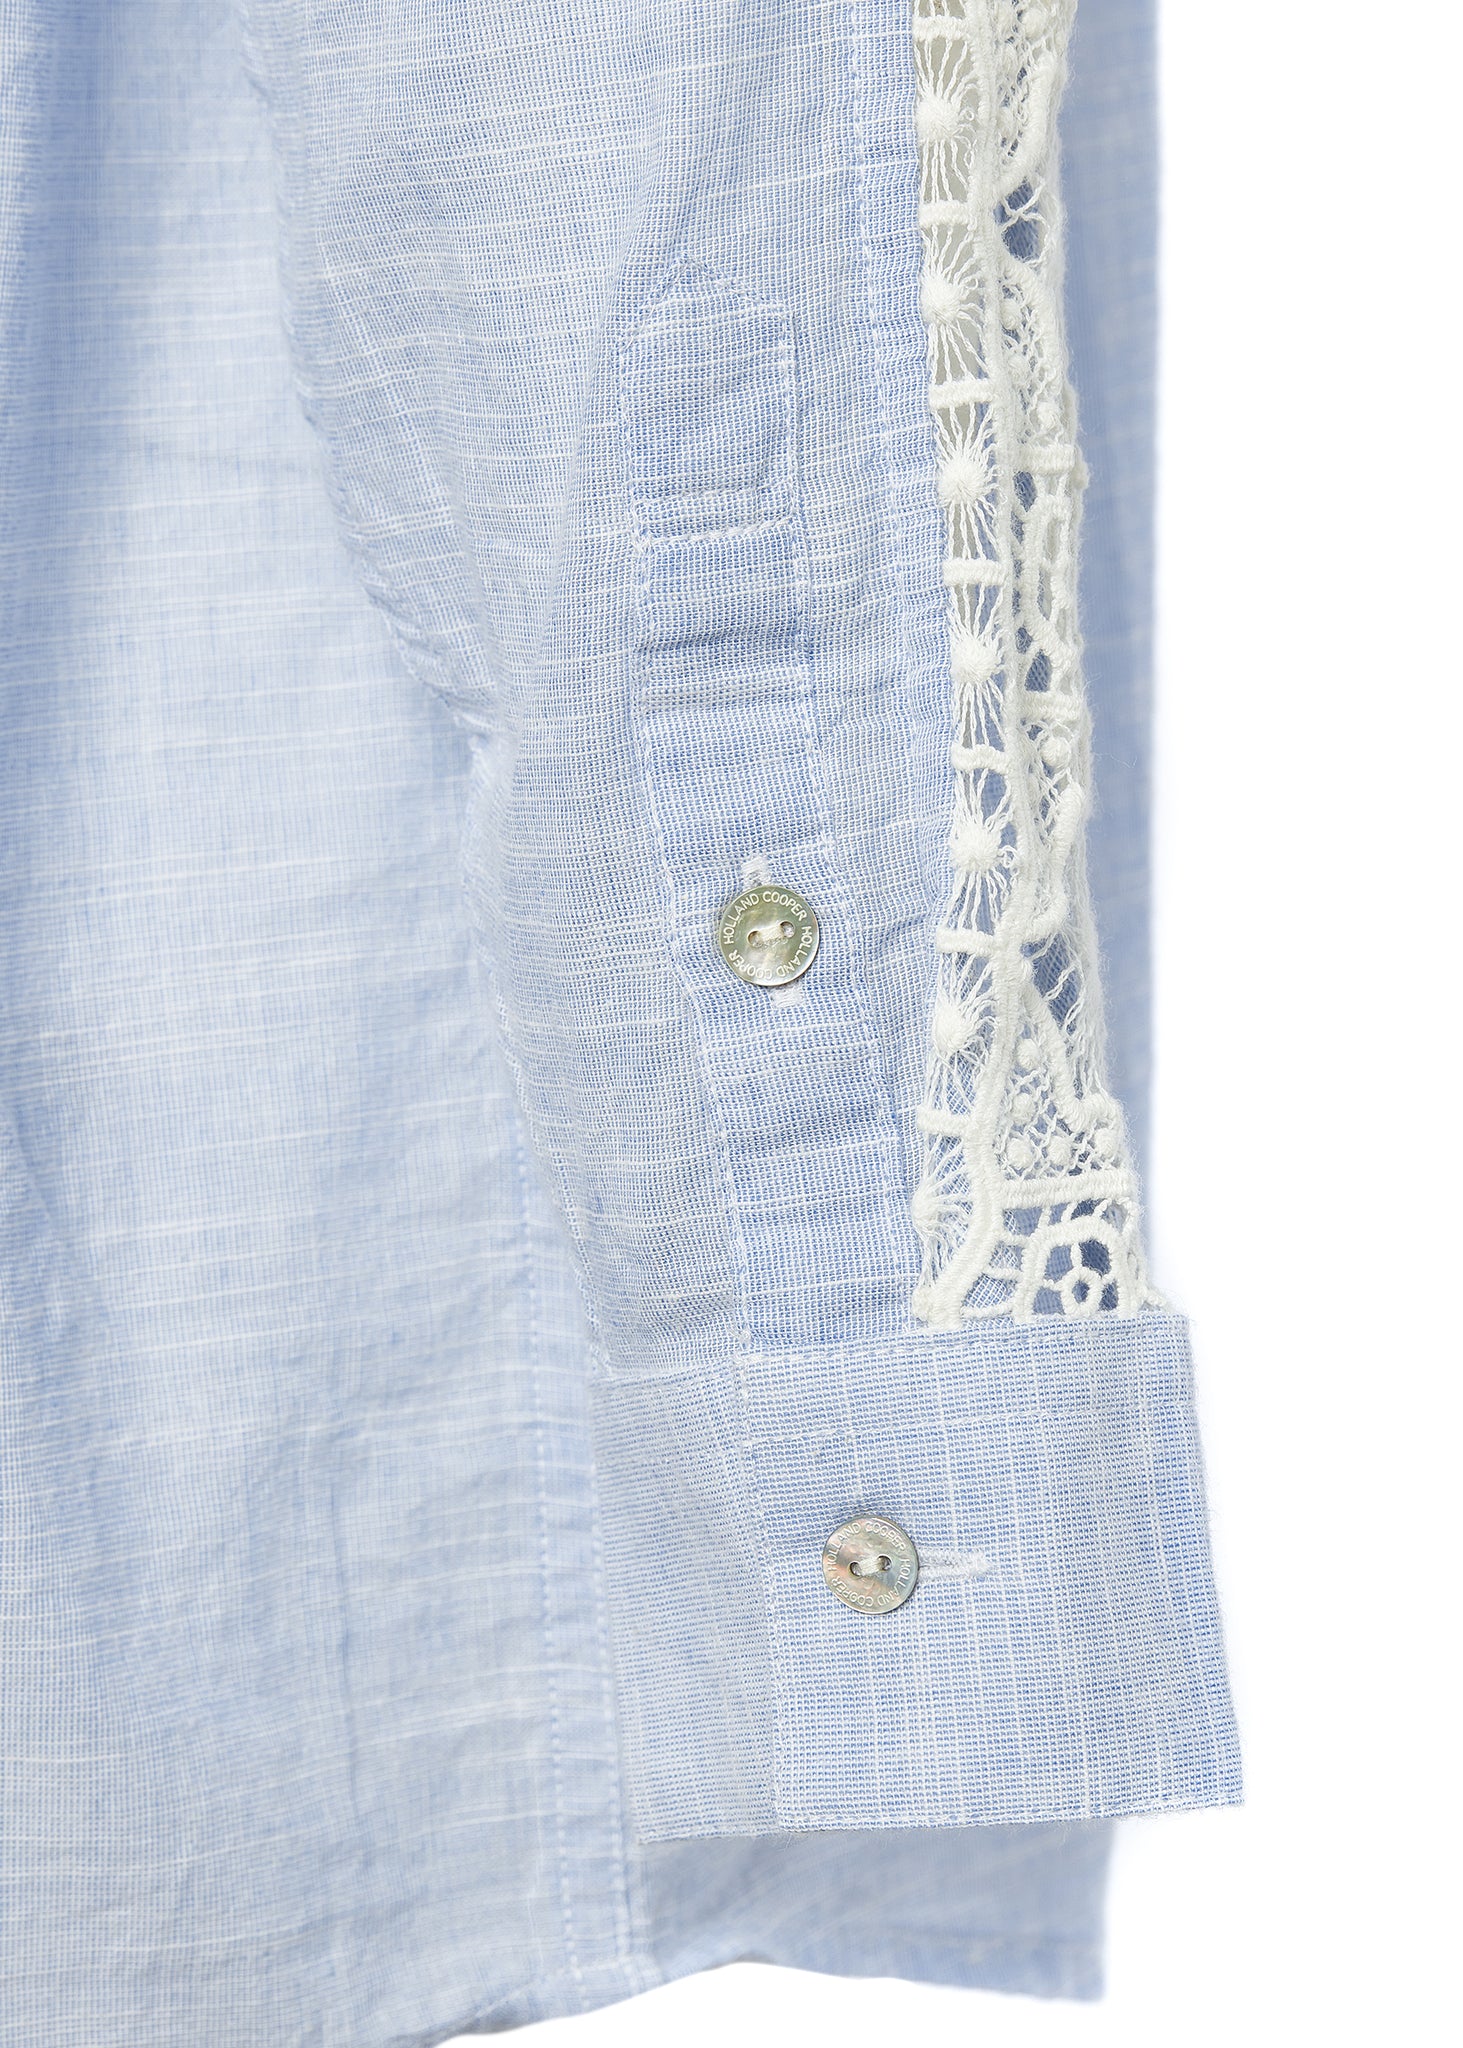 Oversized Cotton Lace Shirt (Tick Stripe Sky Blue)